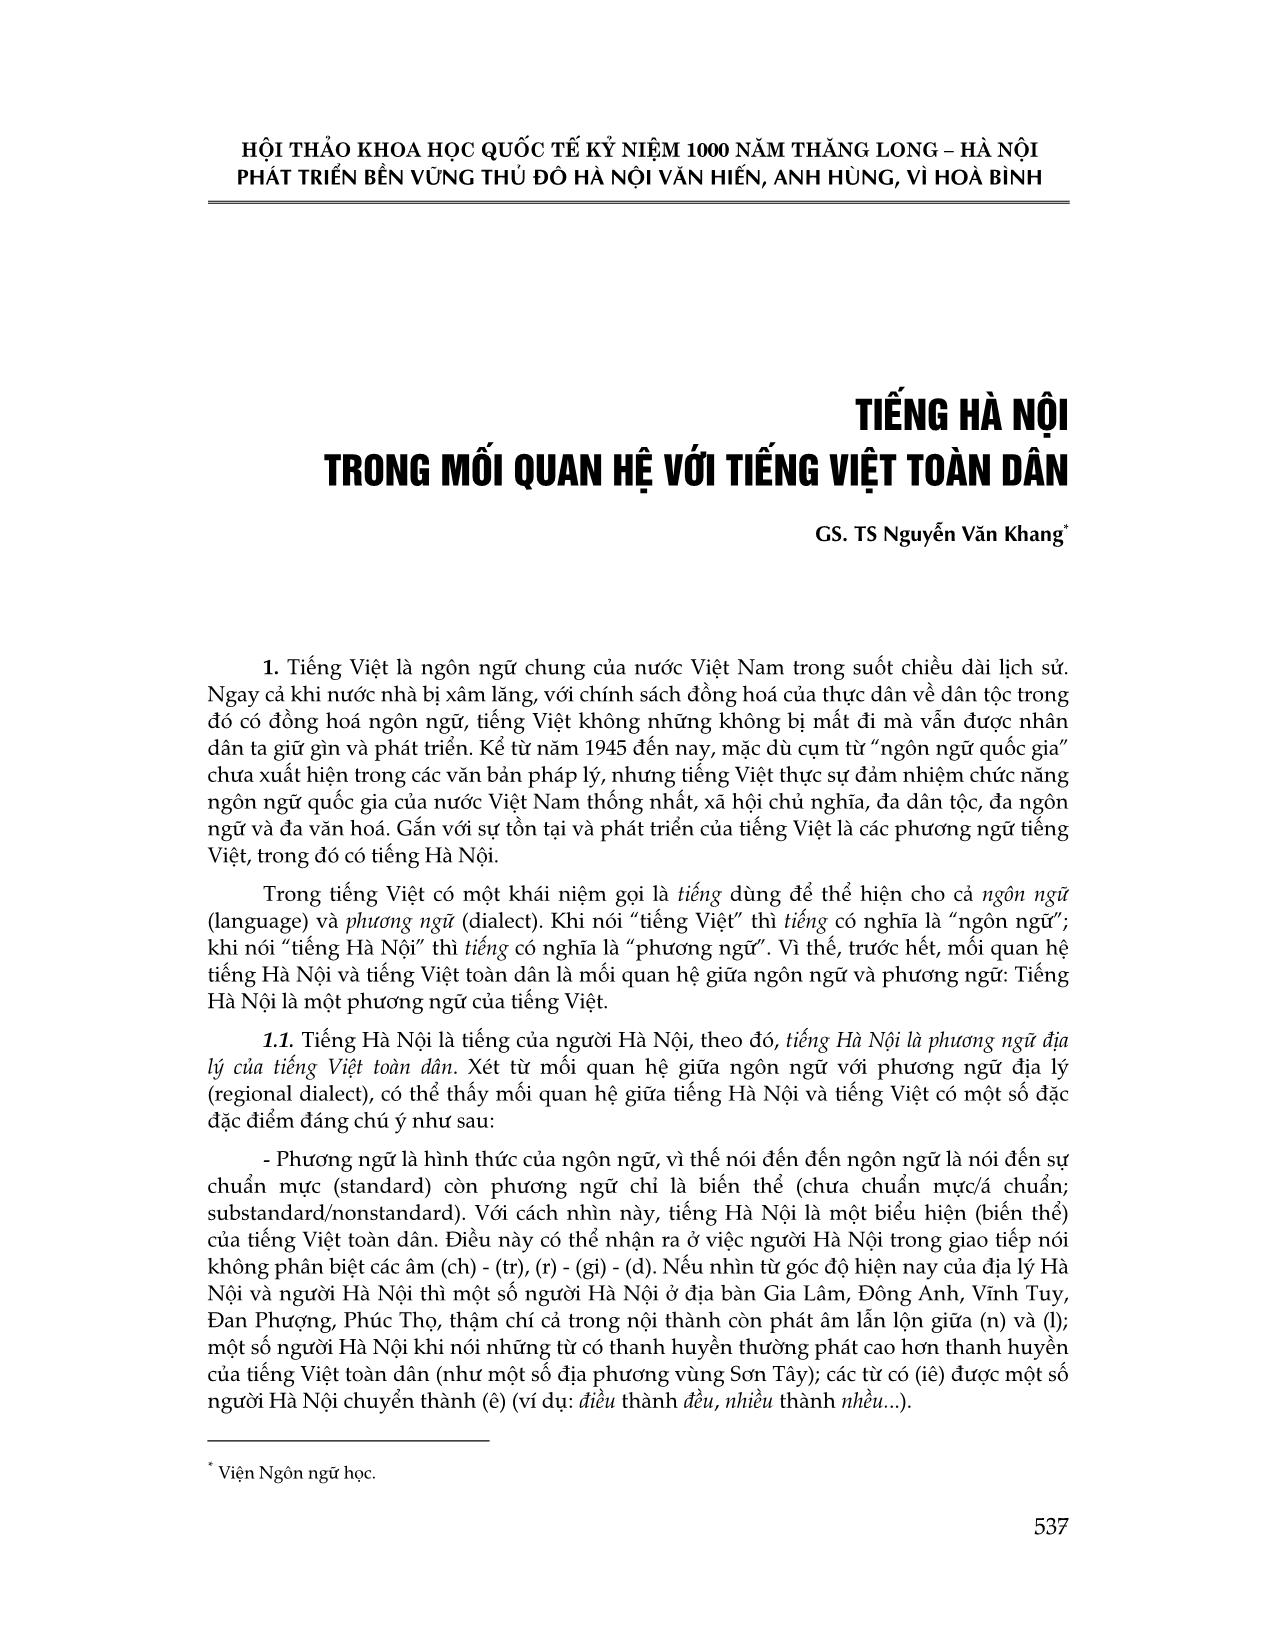 Tiếng Hà Nội trong mối quan hệ với Tiếng Việt toàn dân trang 1